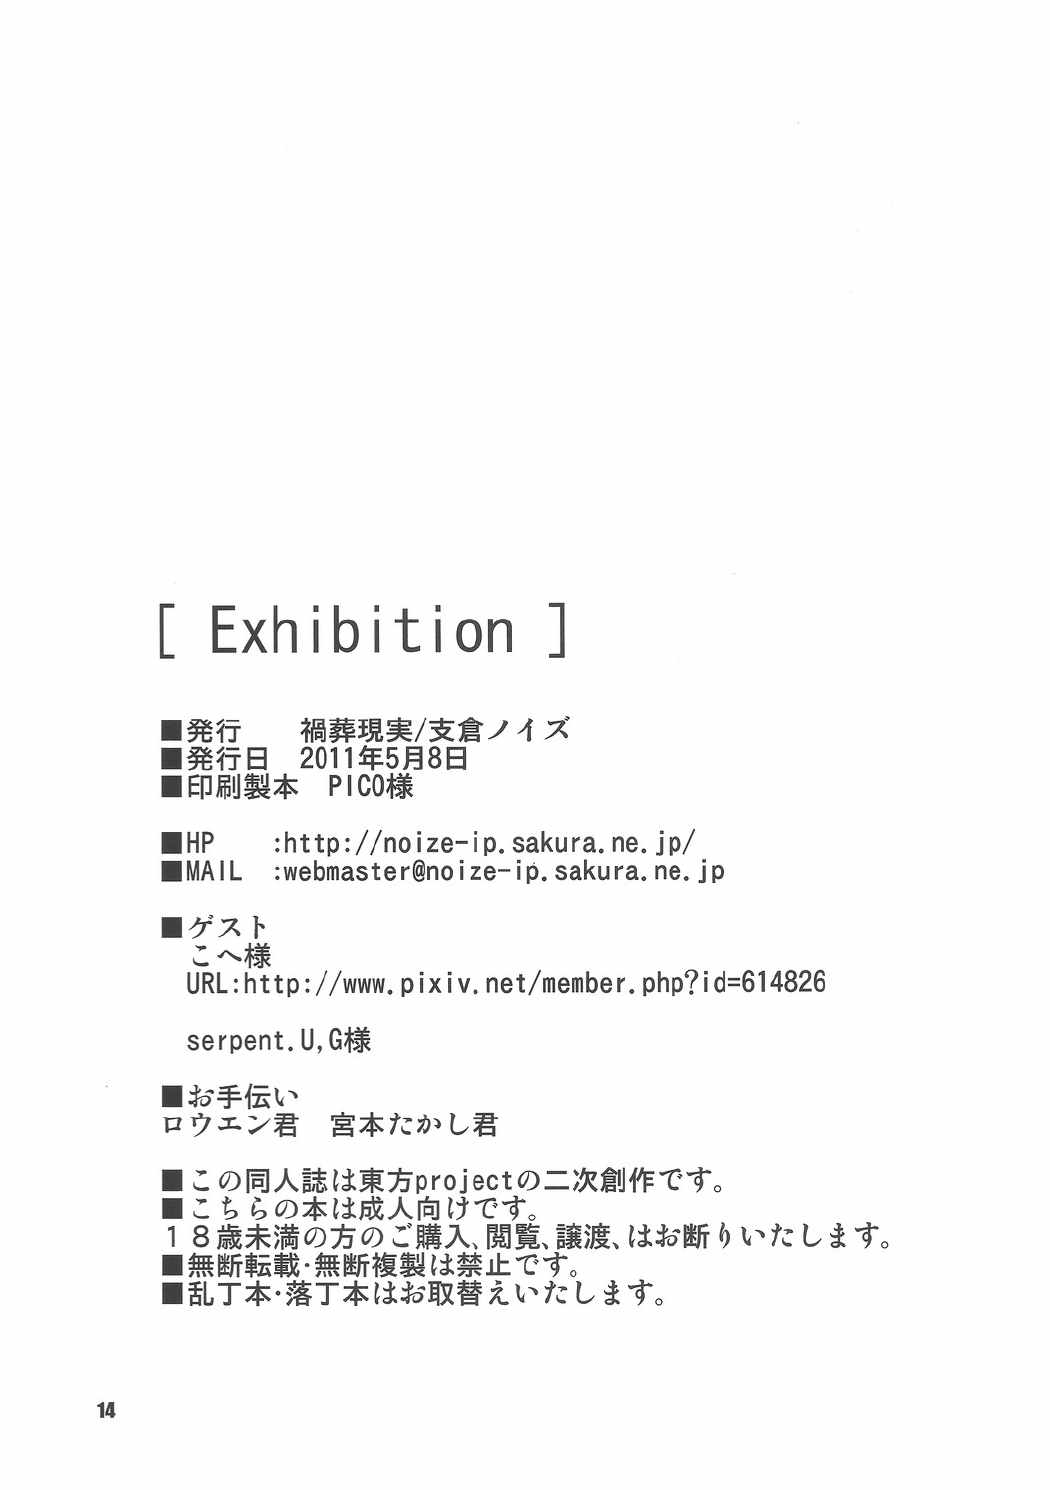 Exhibition 13ページ